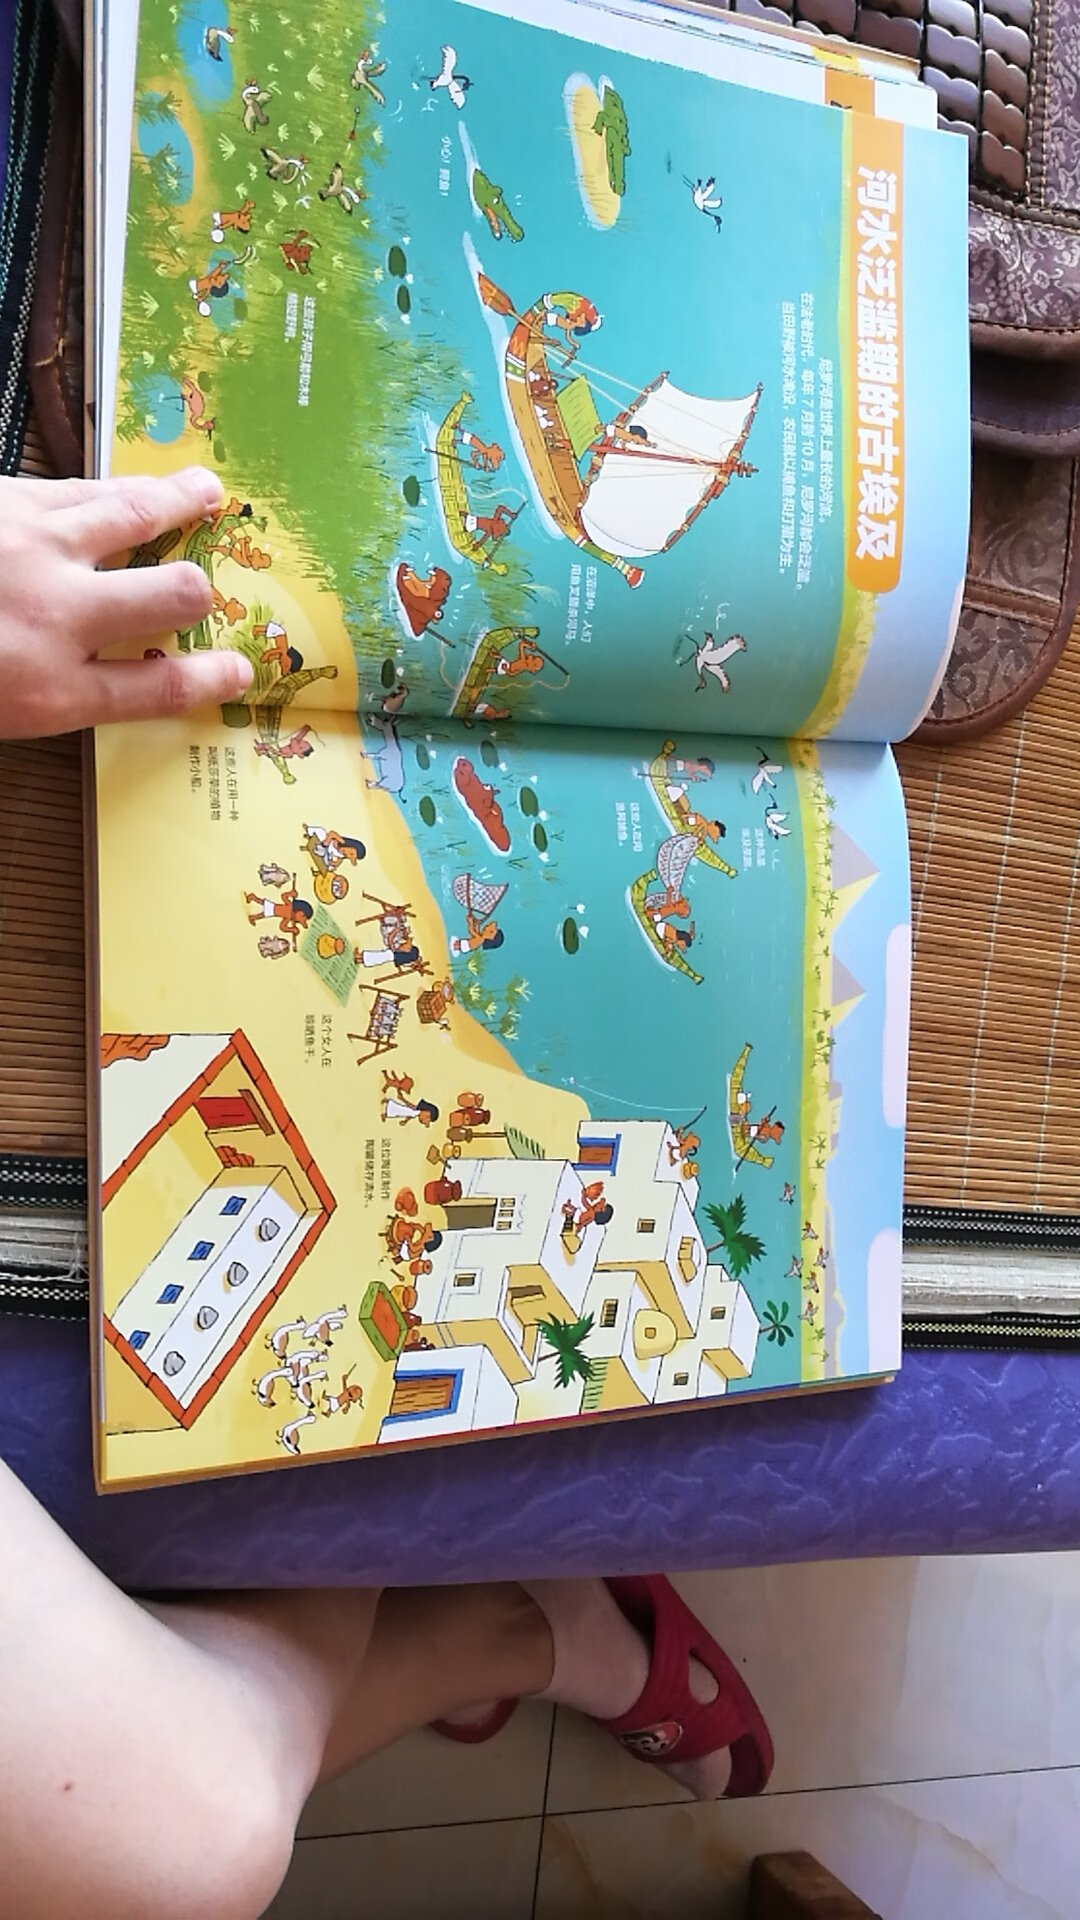 图文并茂，特别适合五岁小朋友阅读，孩子很喜欢，也了解了很多古代人类的生活方式和世界各国的变迁